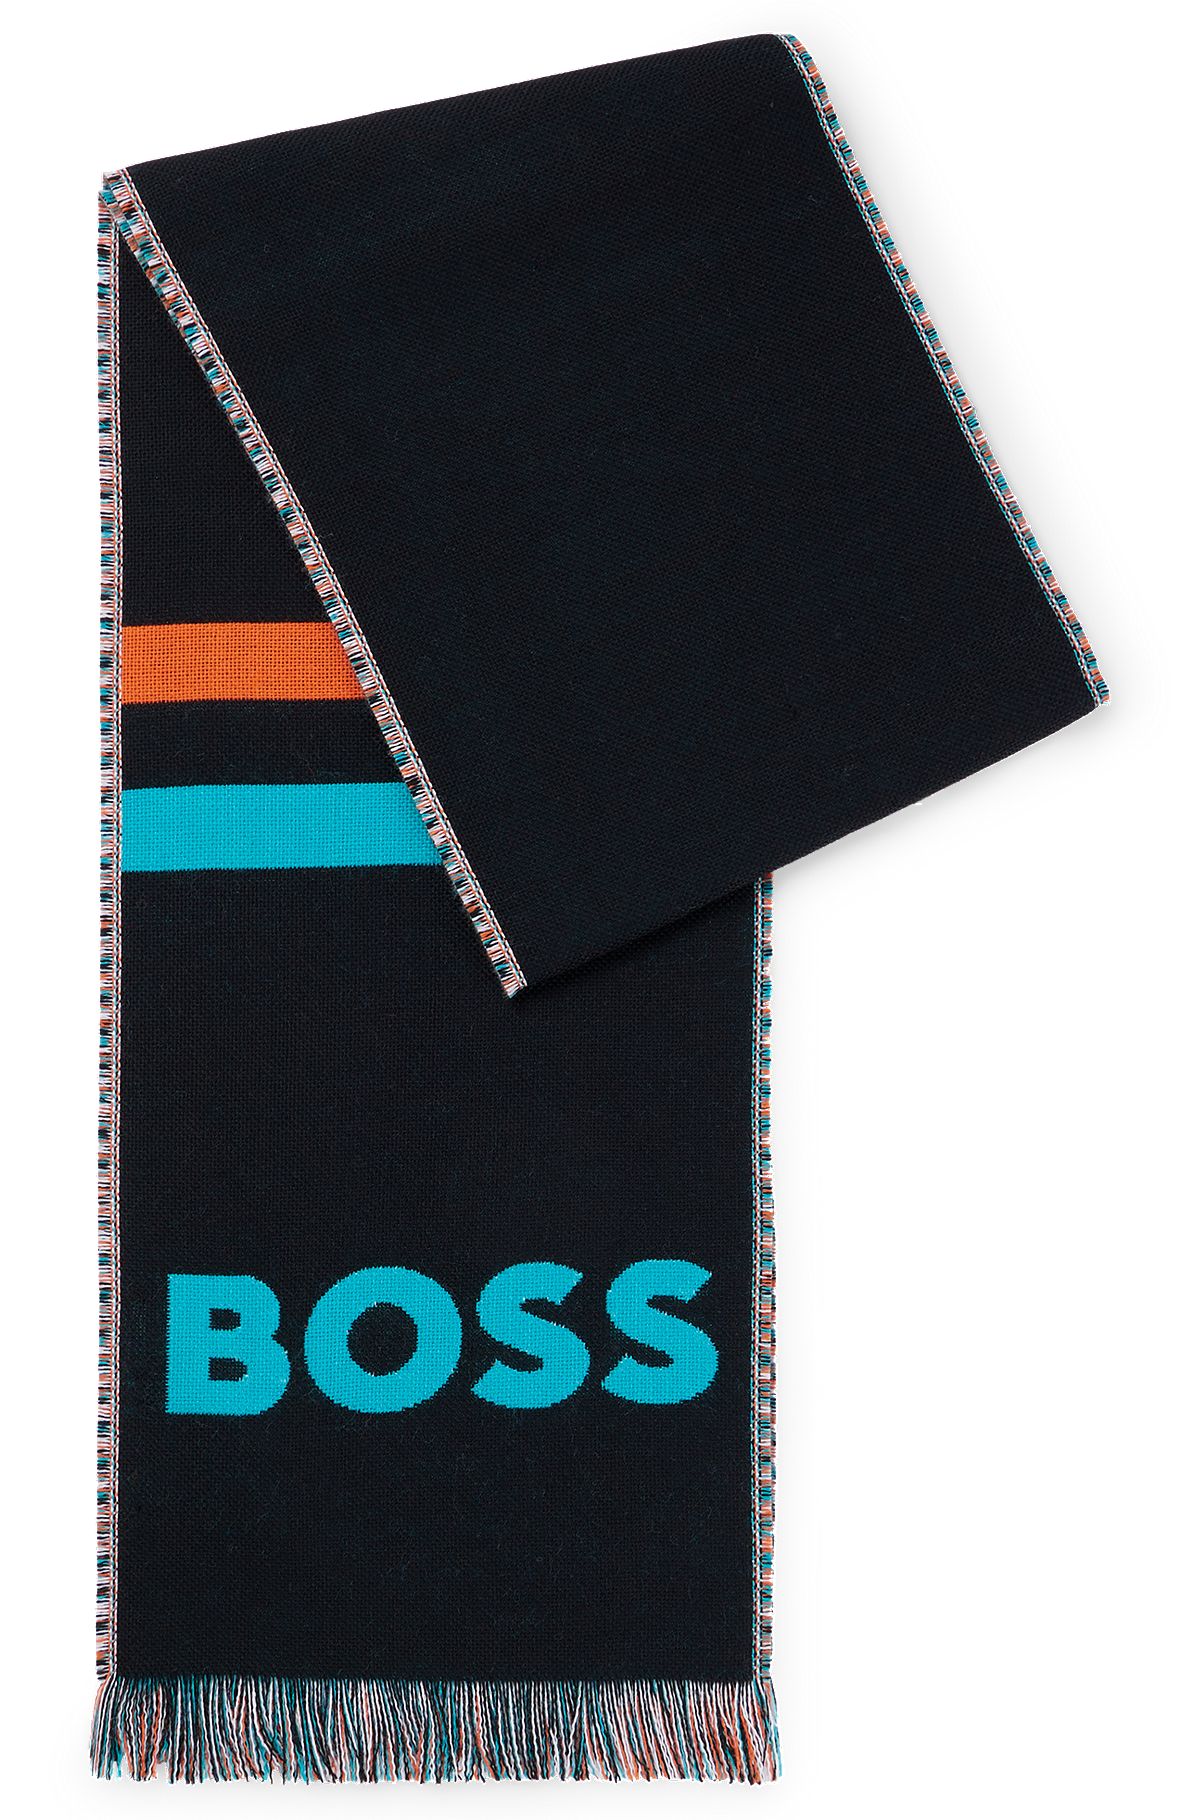 Bufanda con logo BOSS x NFL y detalle de los Miami Dolphins, Dolphins